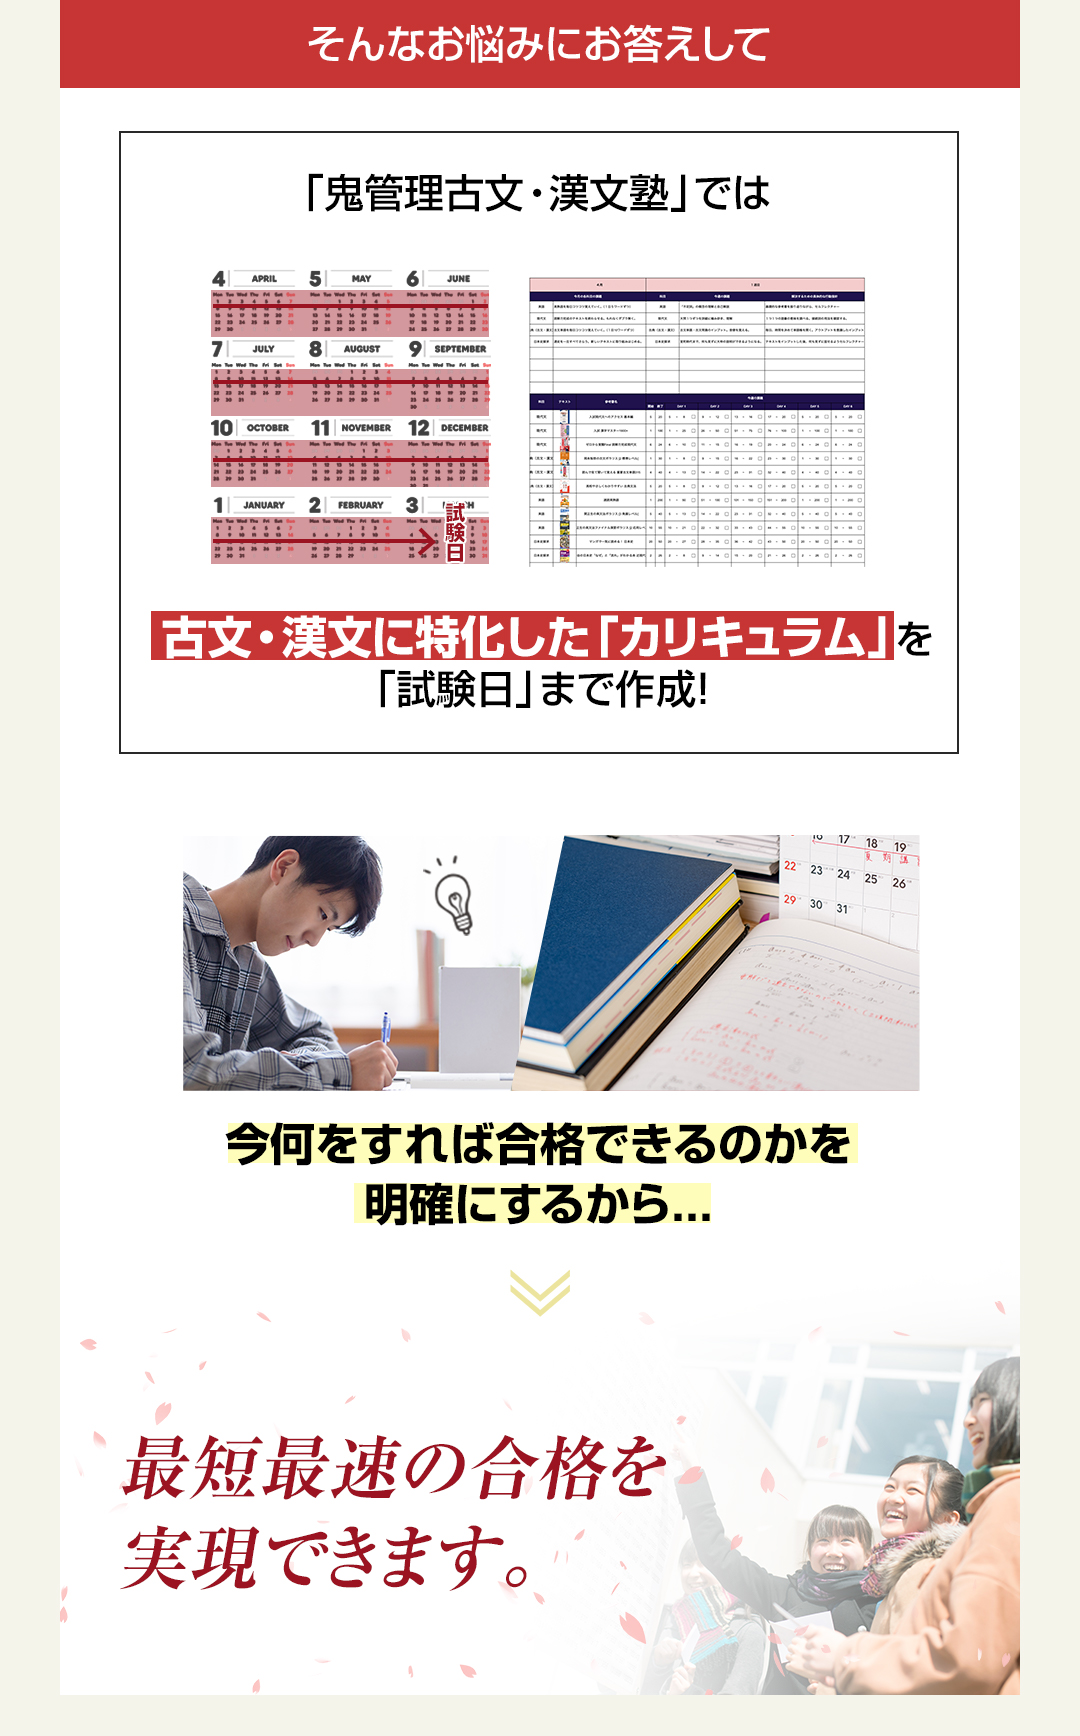 「鬼管理古文・漢文塾」では古文・漢文に特化した「カリキュラム」を「試験日」まで作成